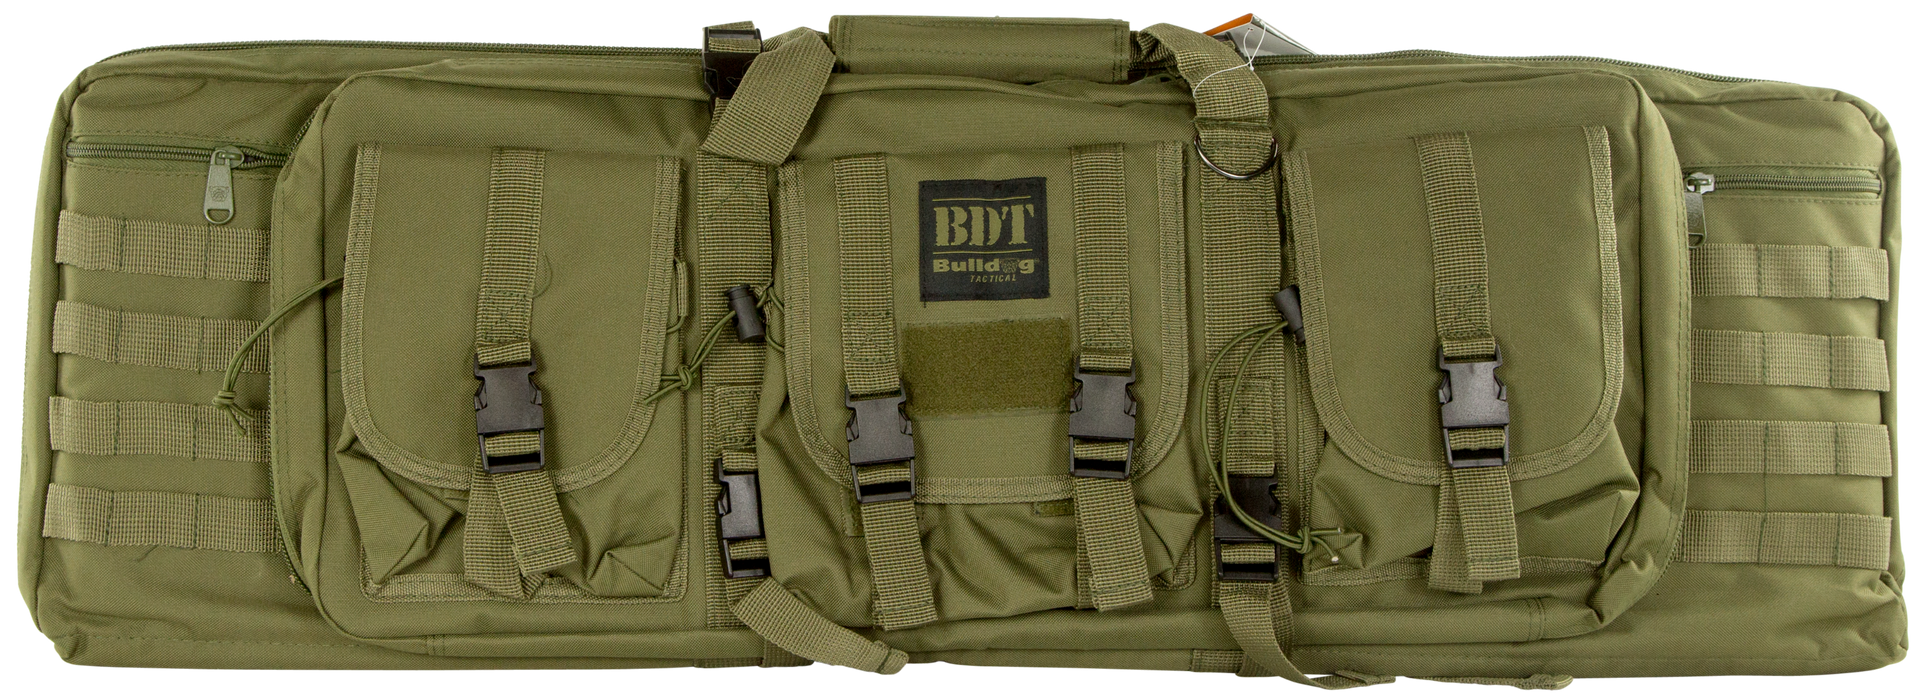 Bulldog Tactical, Bdog Bdt40-37g  Tact Sng Rfl Cs 37 Grn